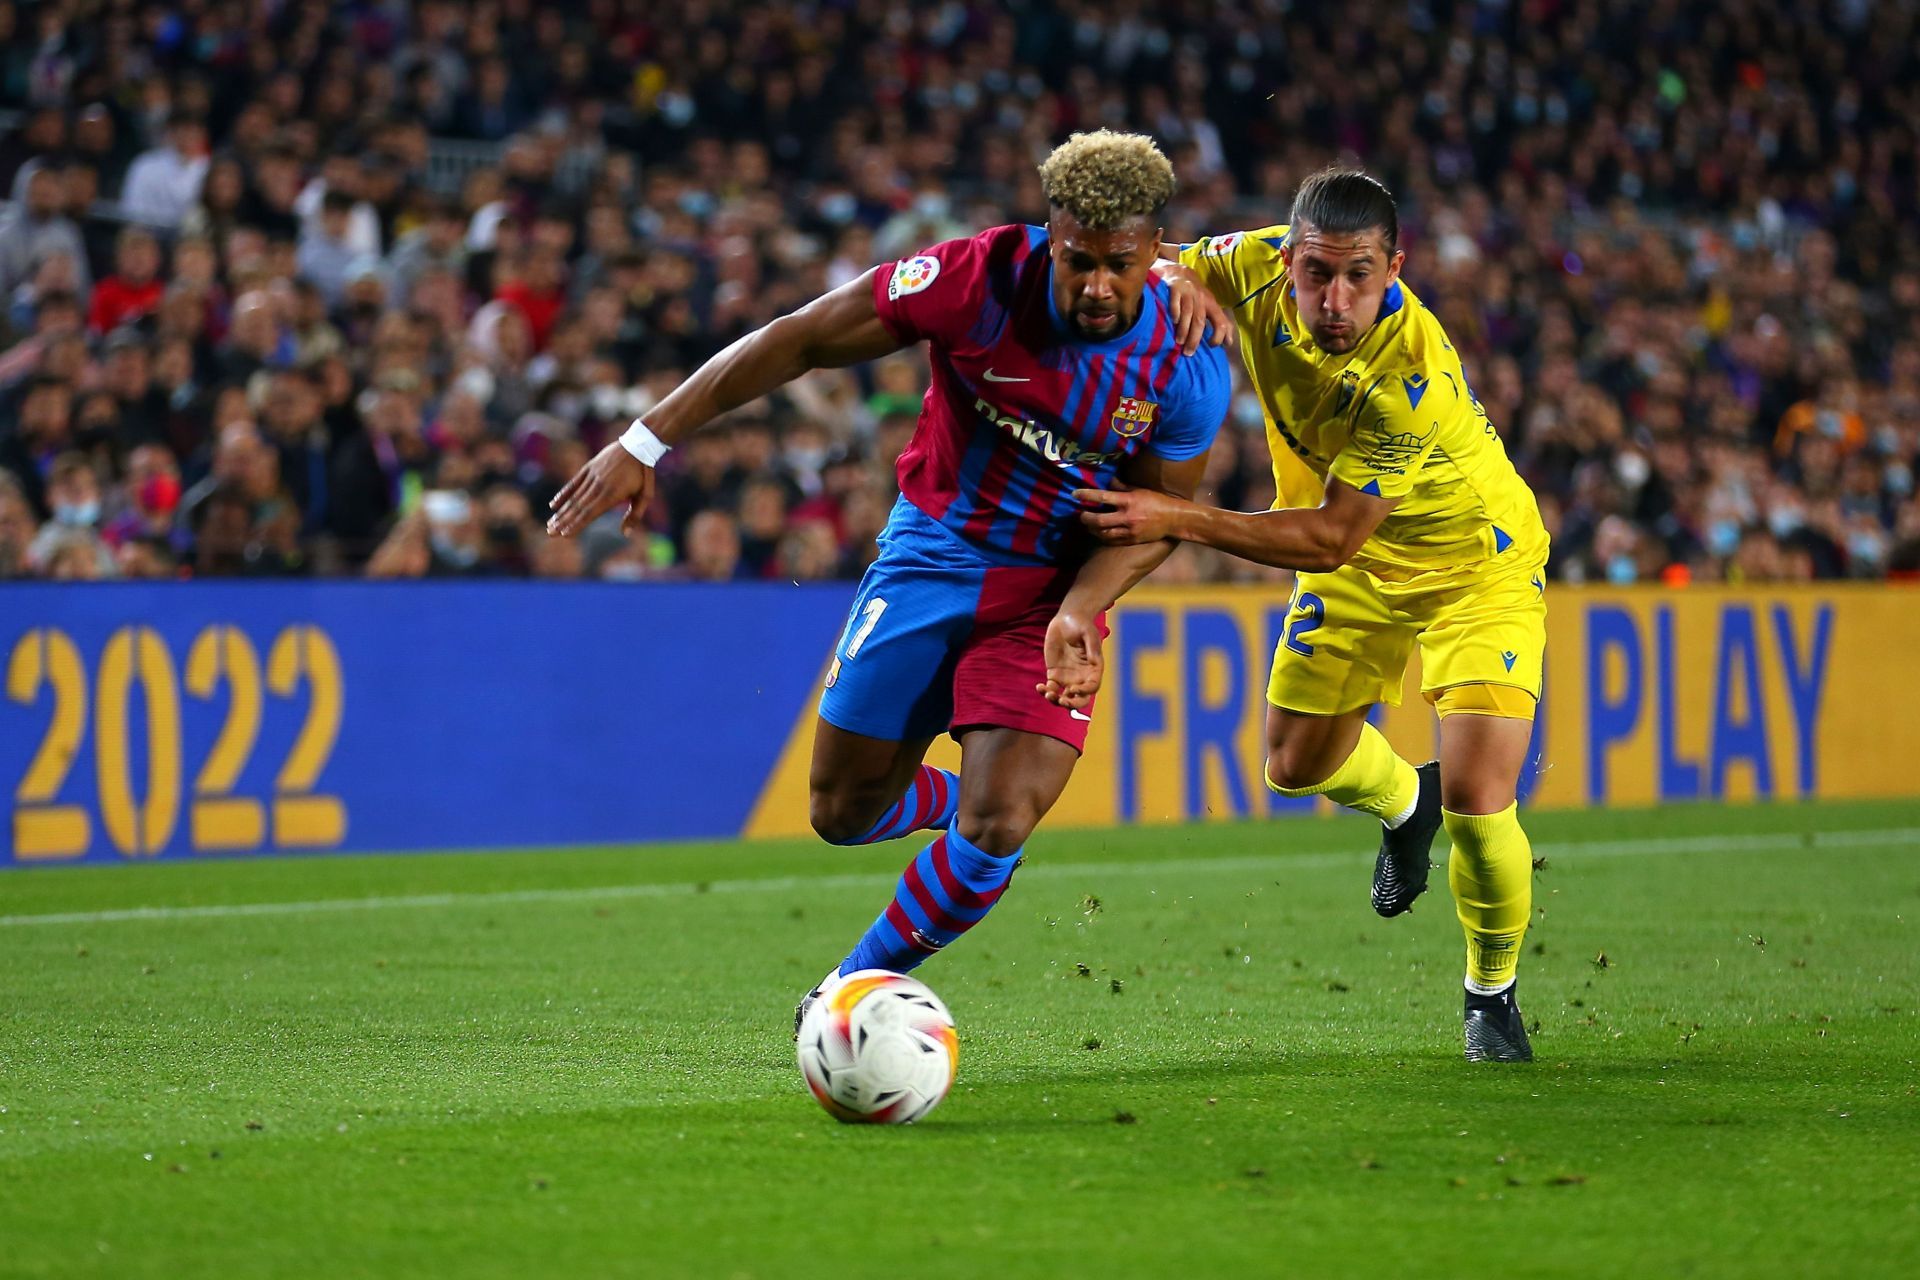 FC Barcelona occupy second place in the La Liga table